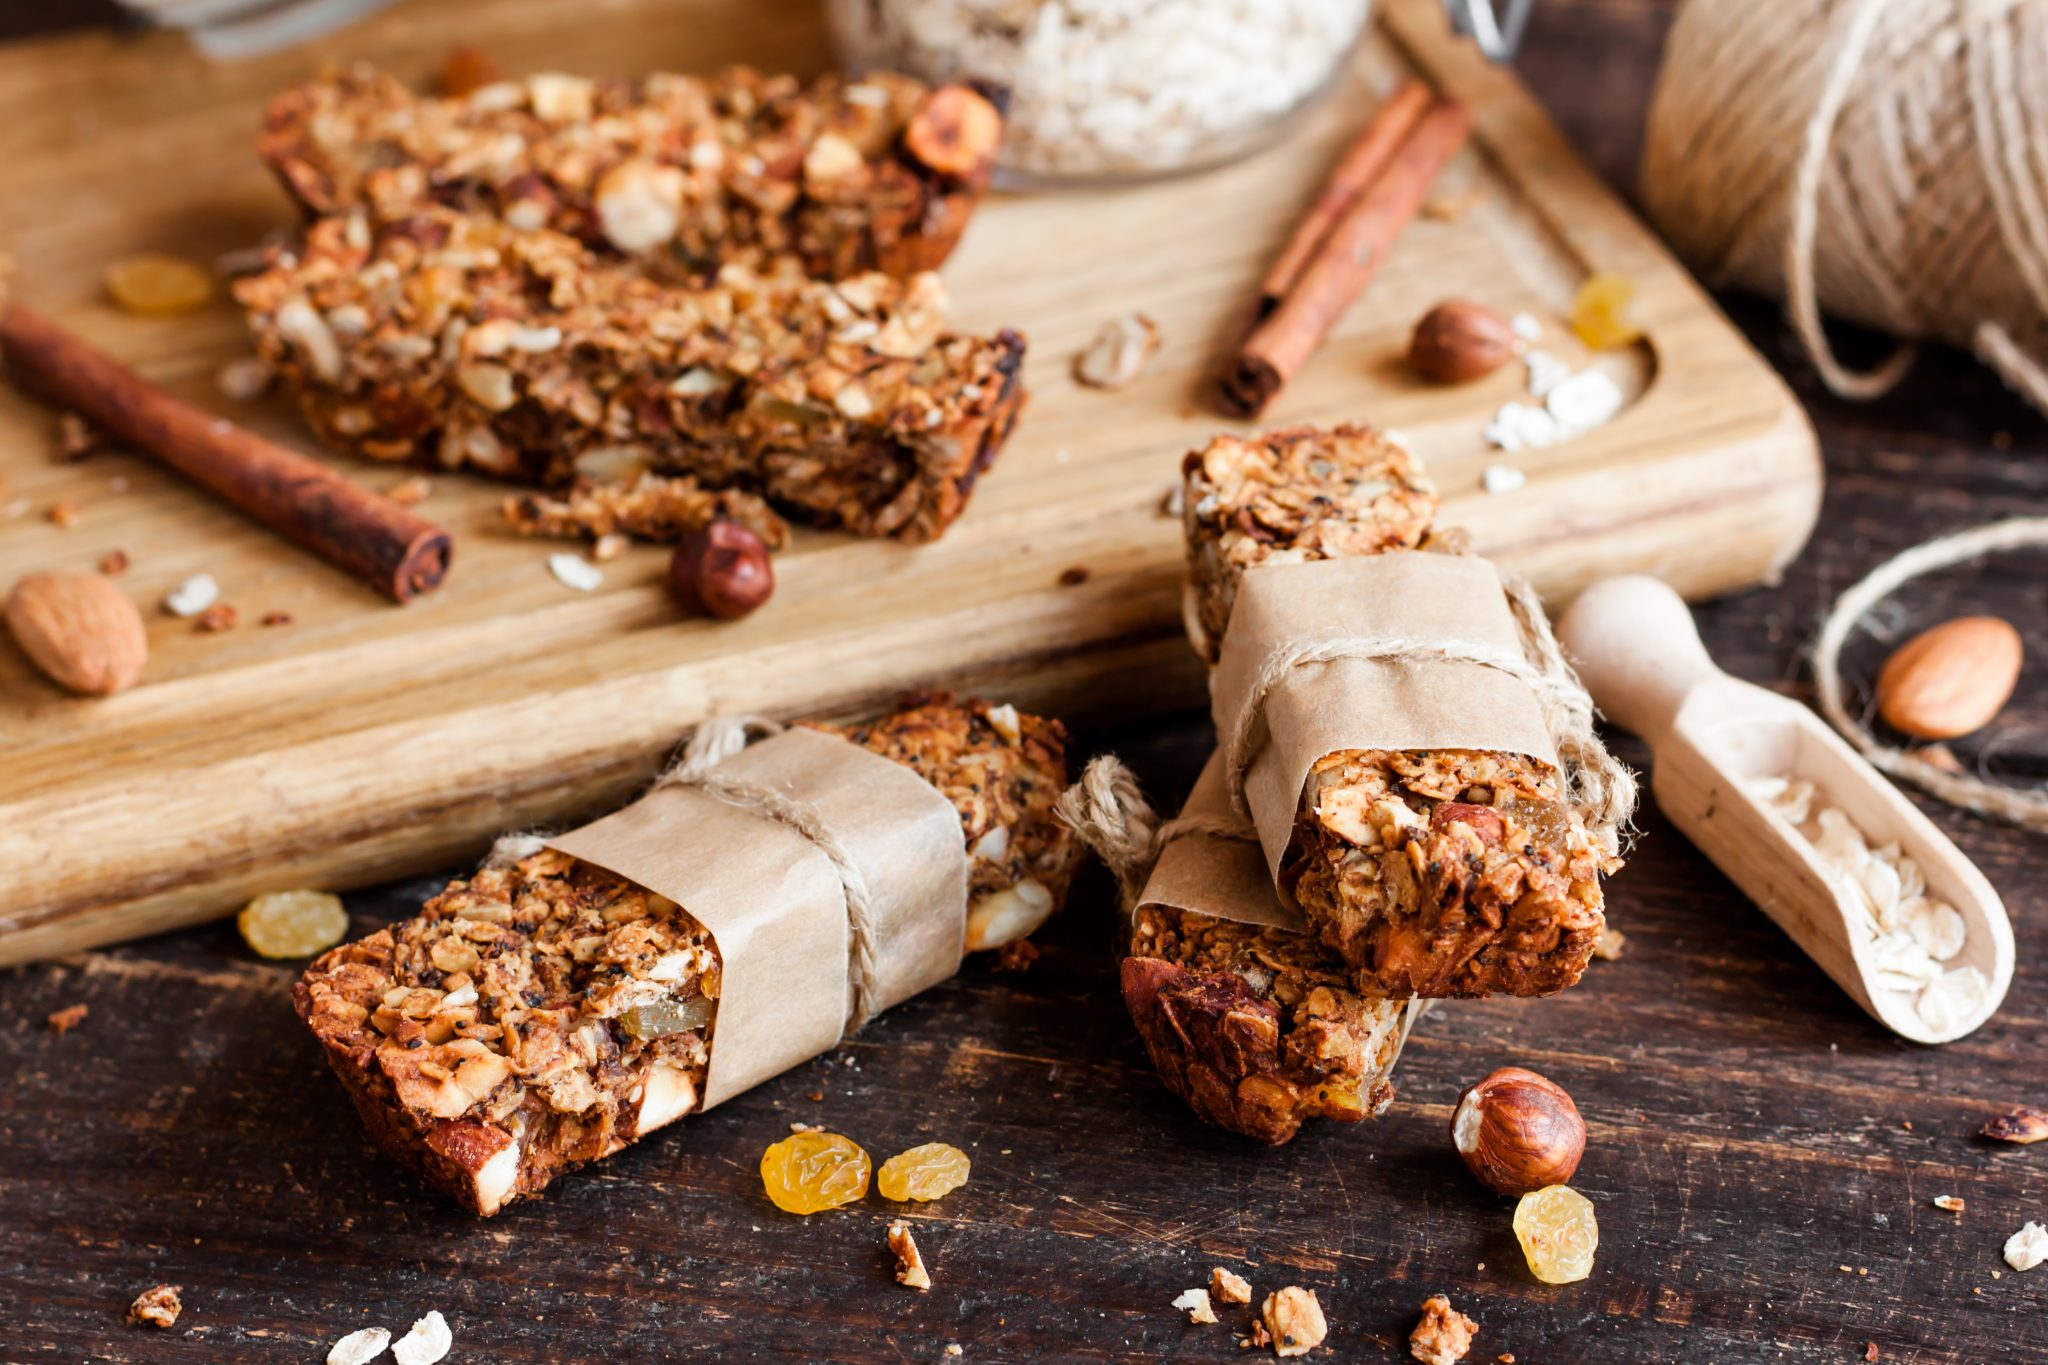 Barrinha de cereal com chocolate, aveia e castanhas: saiba fazer lanche nutritivo e saboroso